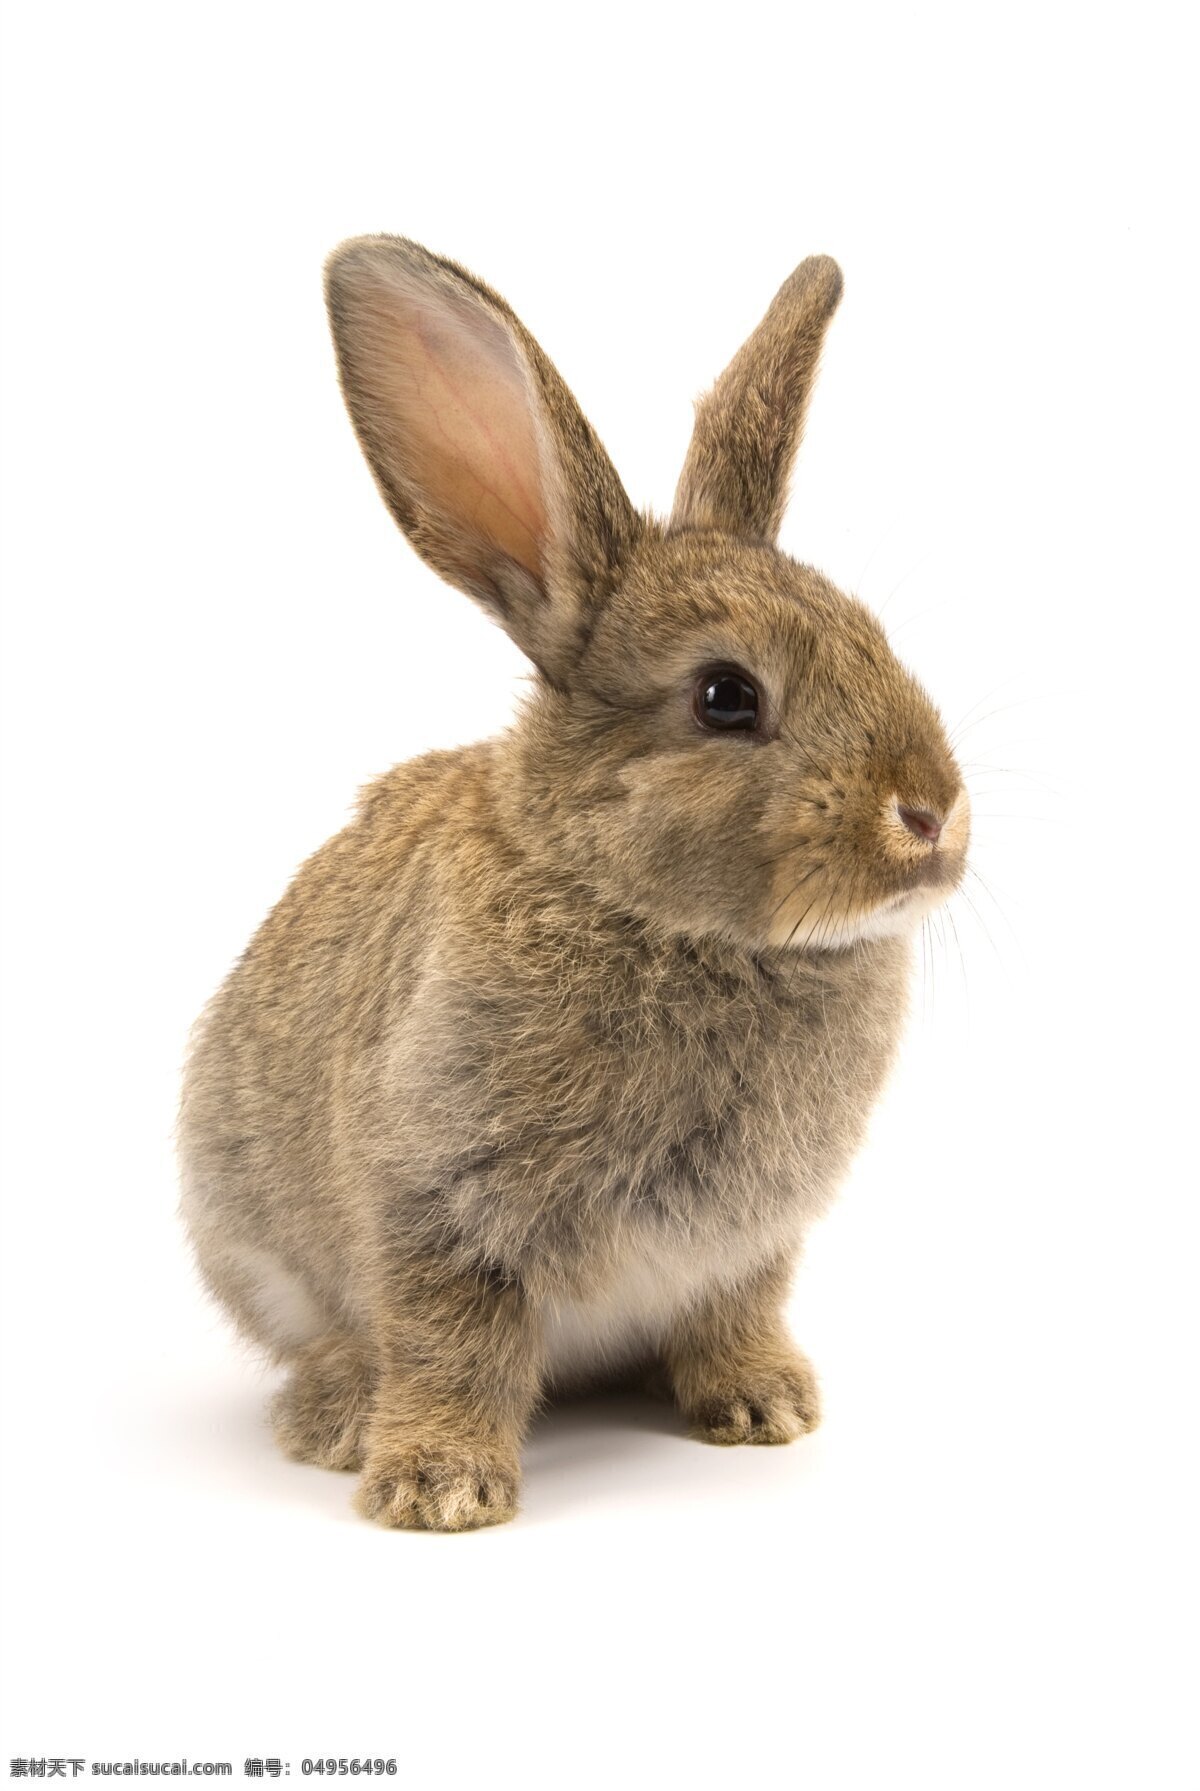 小白兔 白兔 白兔子 小兔子 大白兔 可爱的兔子 红眼睛兔子 兔子特写 可爱的小兔子 宠物兔子 草地兔子 麦田兔子 萌宠